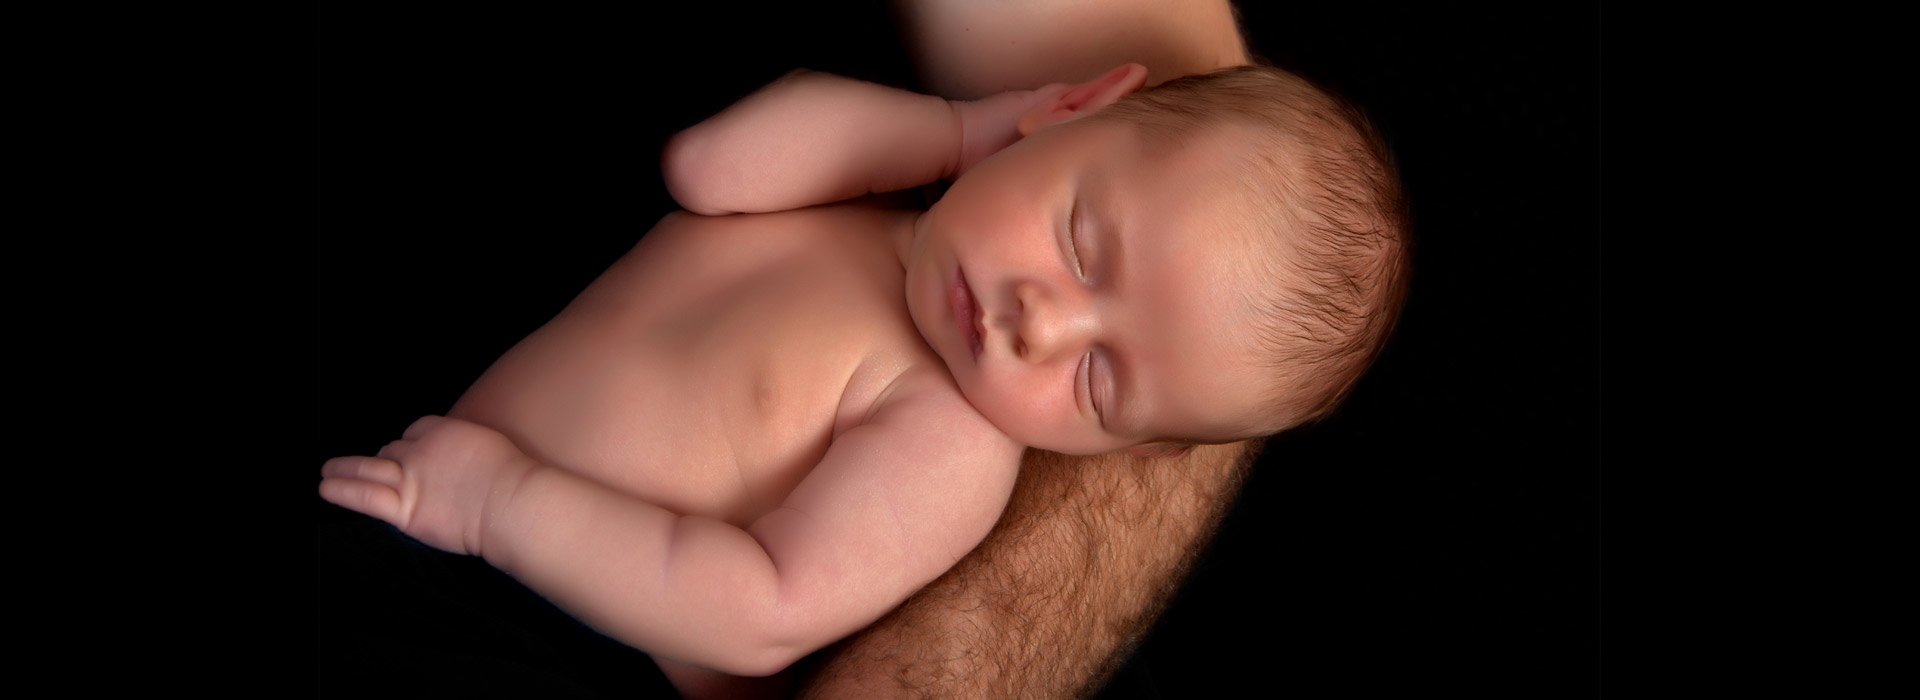 zdjęcie noworodka na ręku ojca